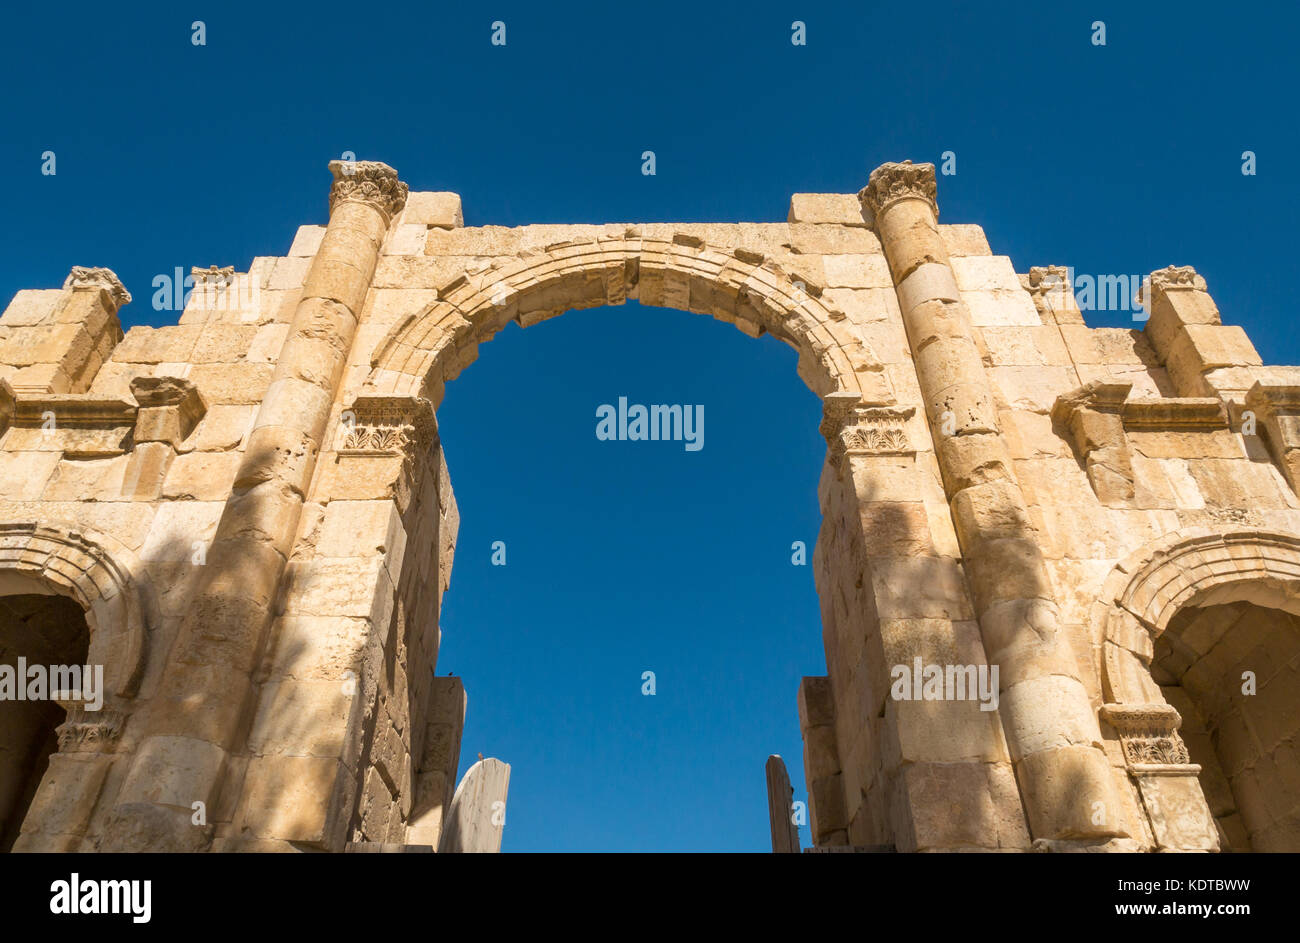 Guardando verso l'alto l'Arco di Adriano gate, lato sud della città romana di Jerash, antica Gerasa, sito archeologico, nel nord della Giordania, Medio Oriente Foto Stock